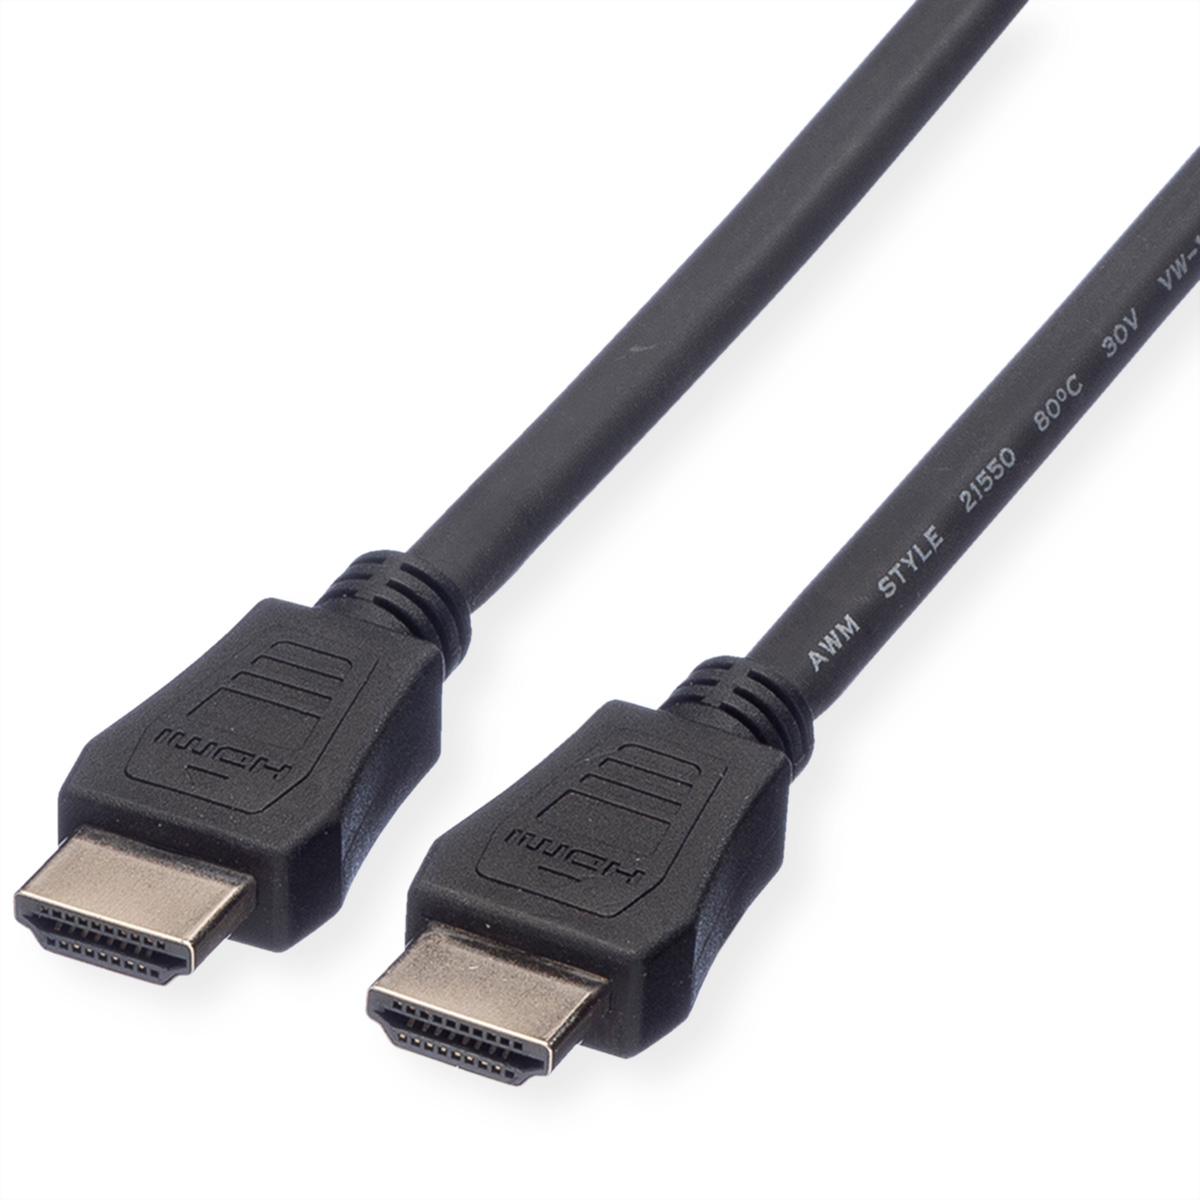 VALUE HDMI High Speed HDMI Kabel LSOH mit Ethernet, High Kabel Ethernet mit Speed